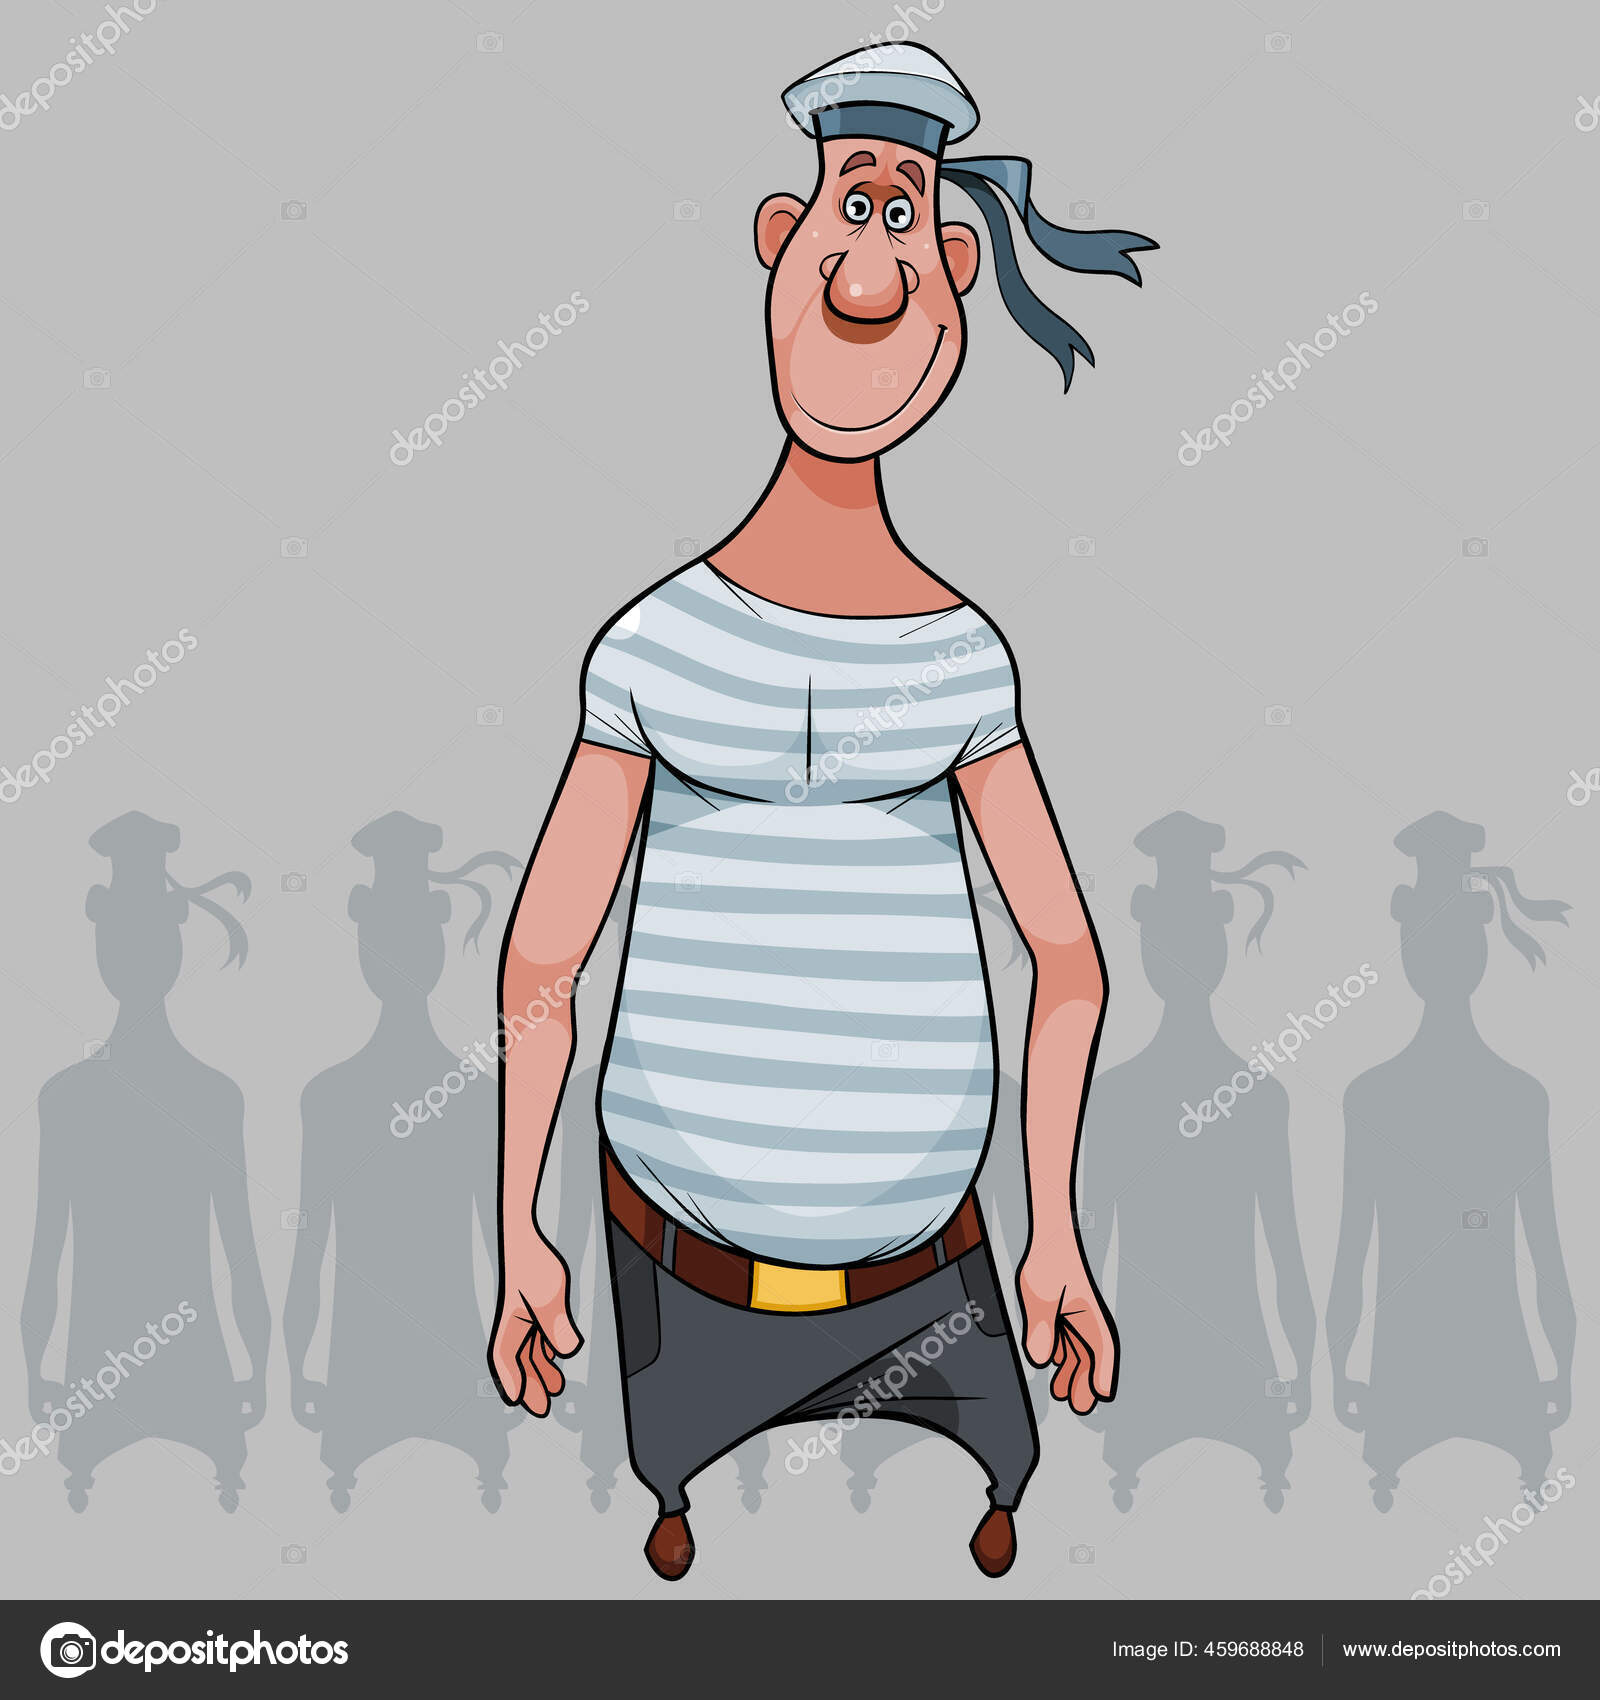 Lucu Kartun Pria Lucu Dalam Pakaian Pelaut Dengan Topi Peakless Stok Vektor Westamult 459688848